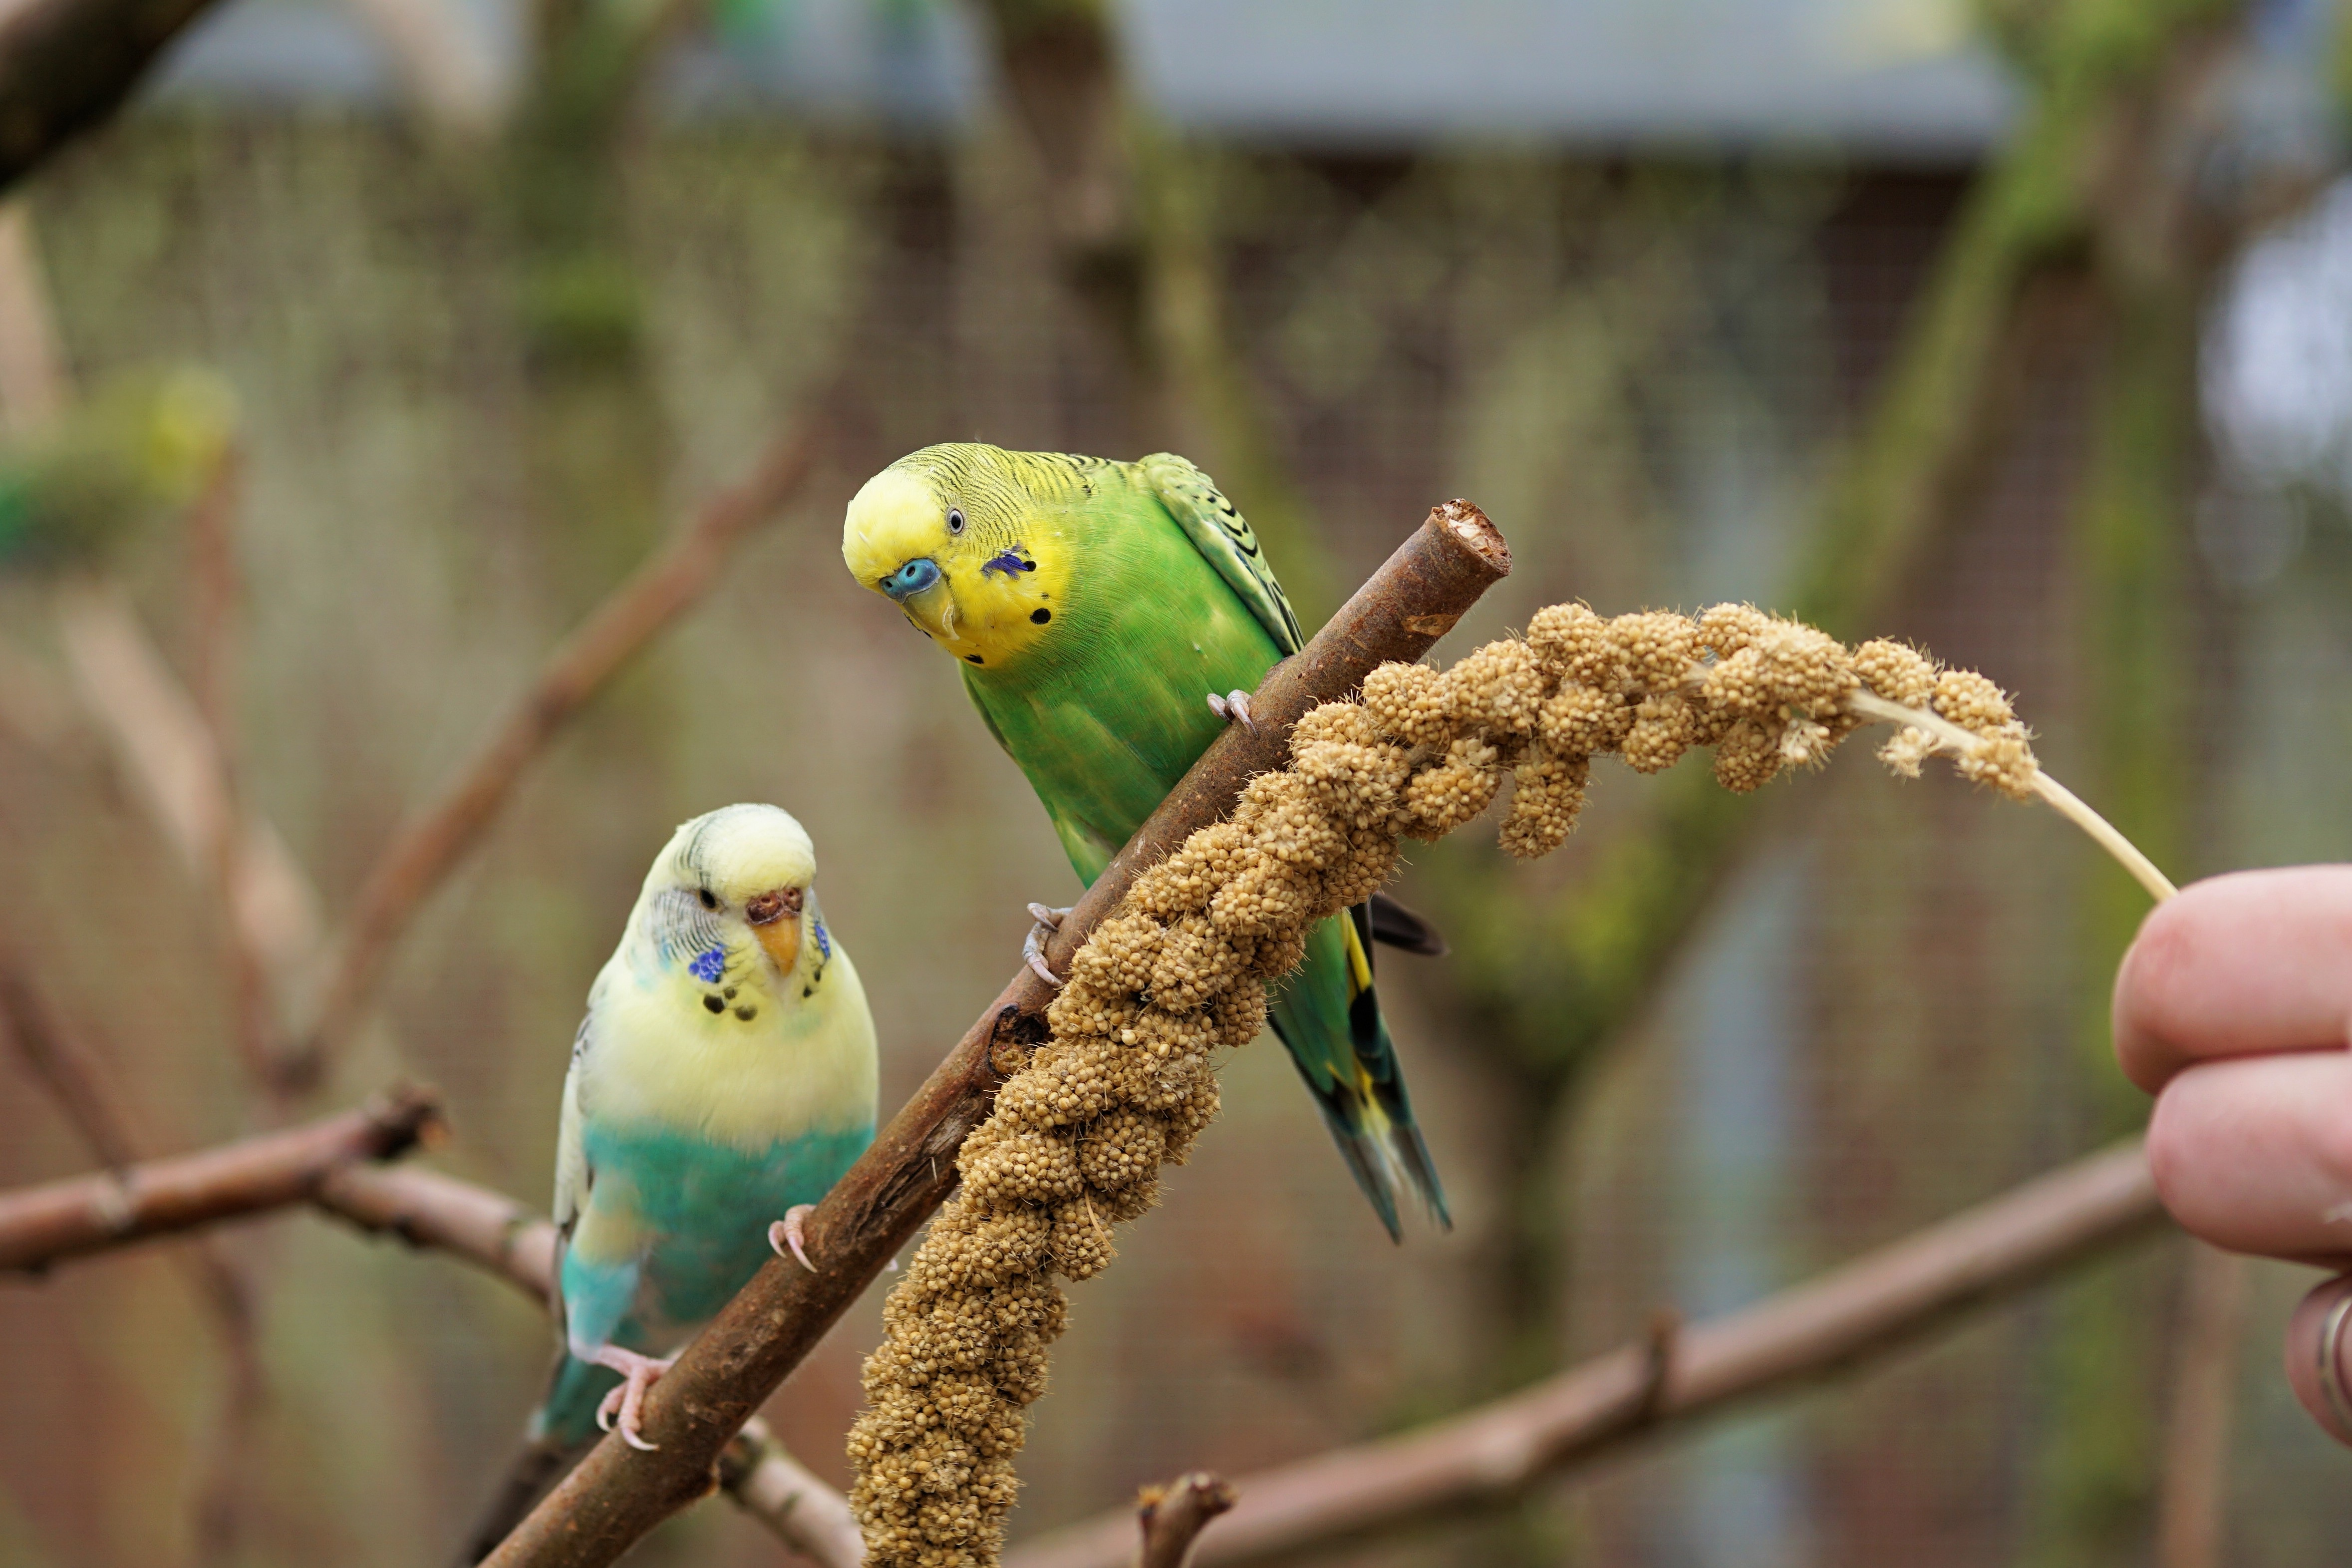 Волнистые попугайчики: интересные факты